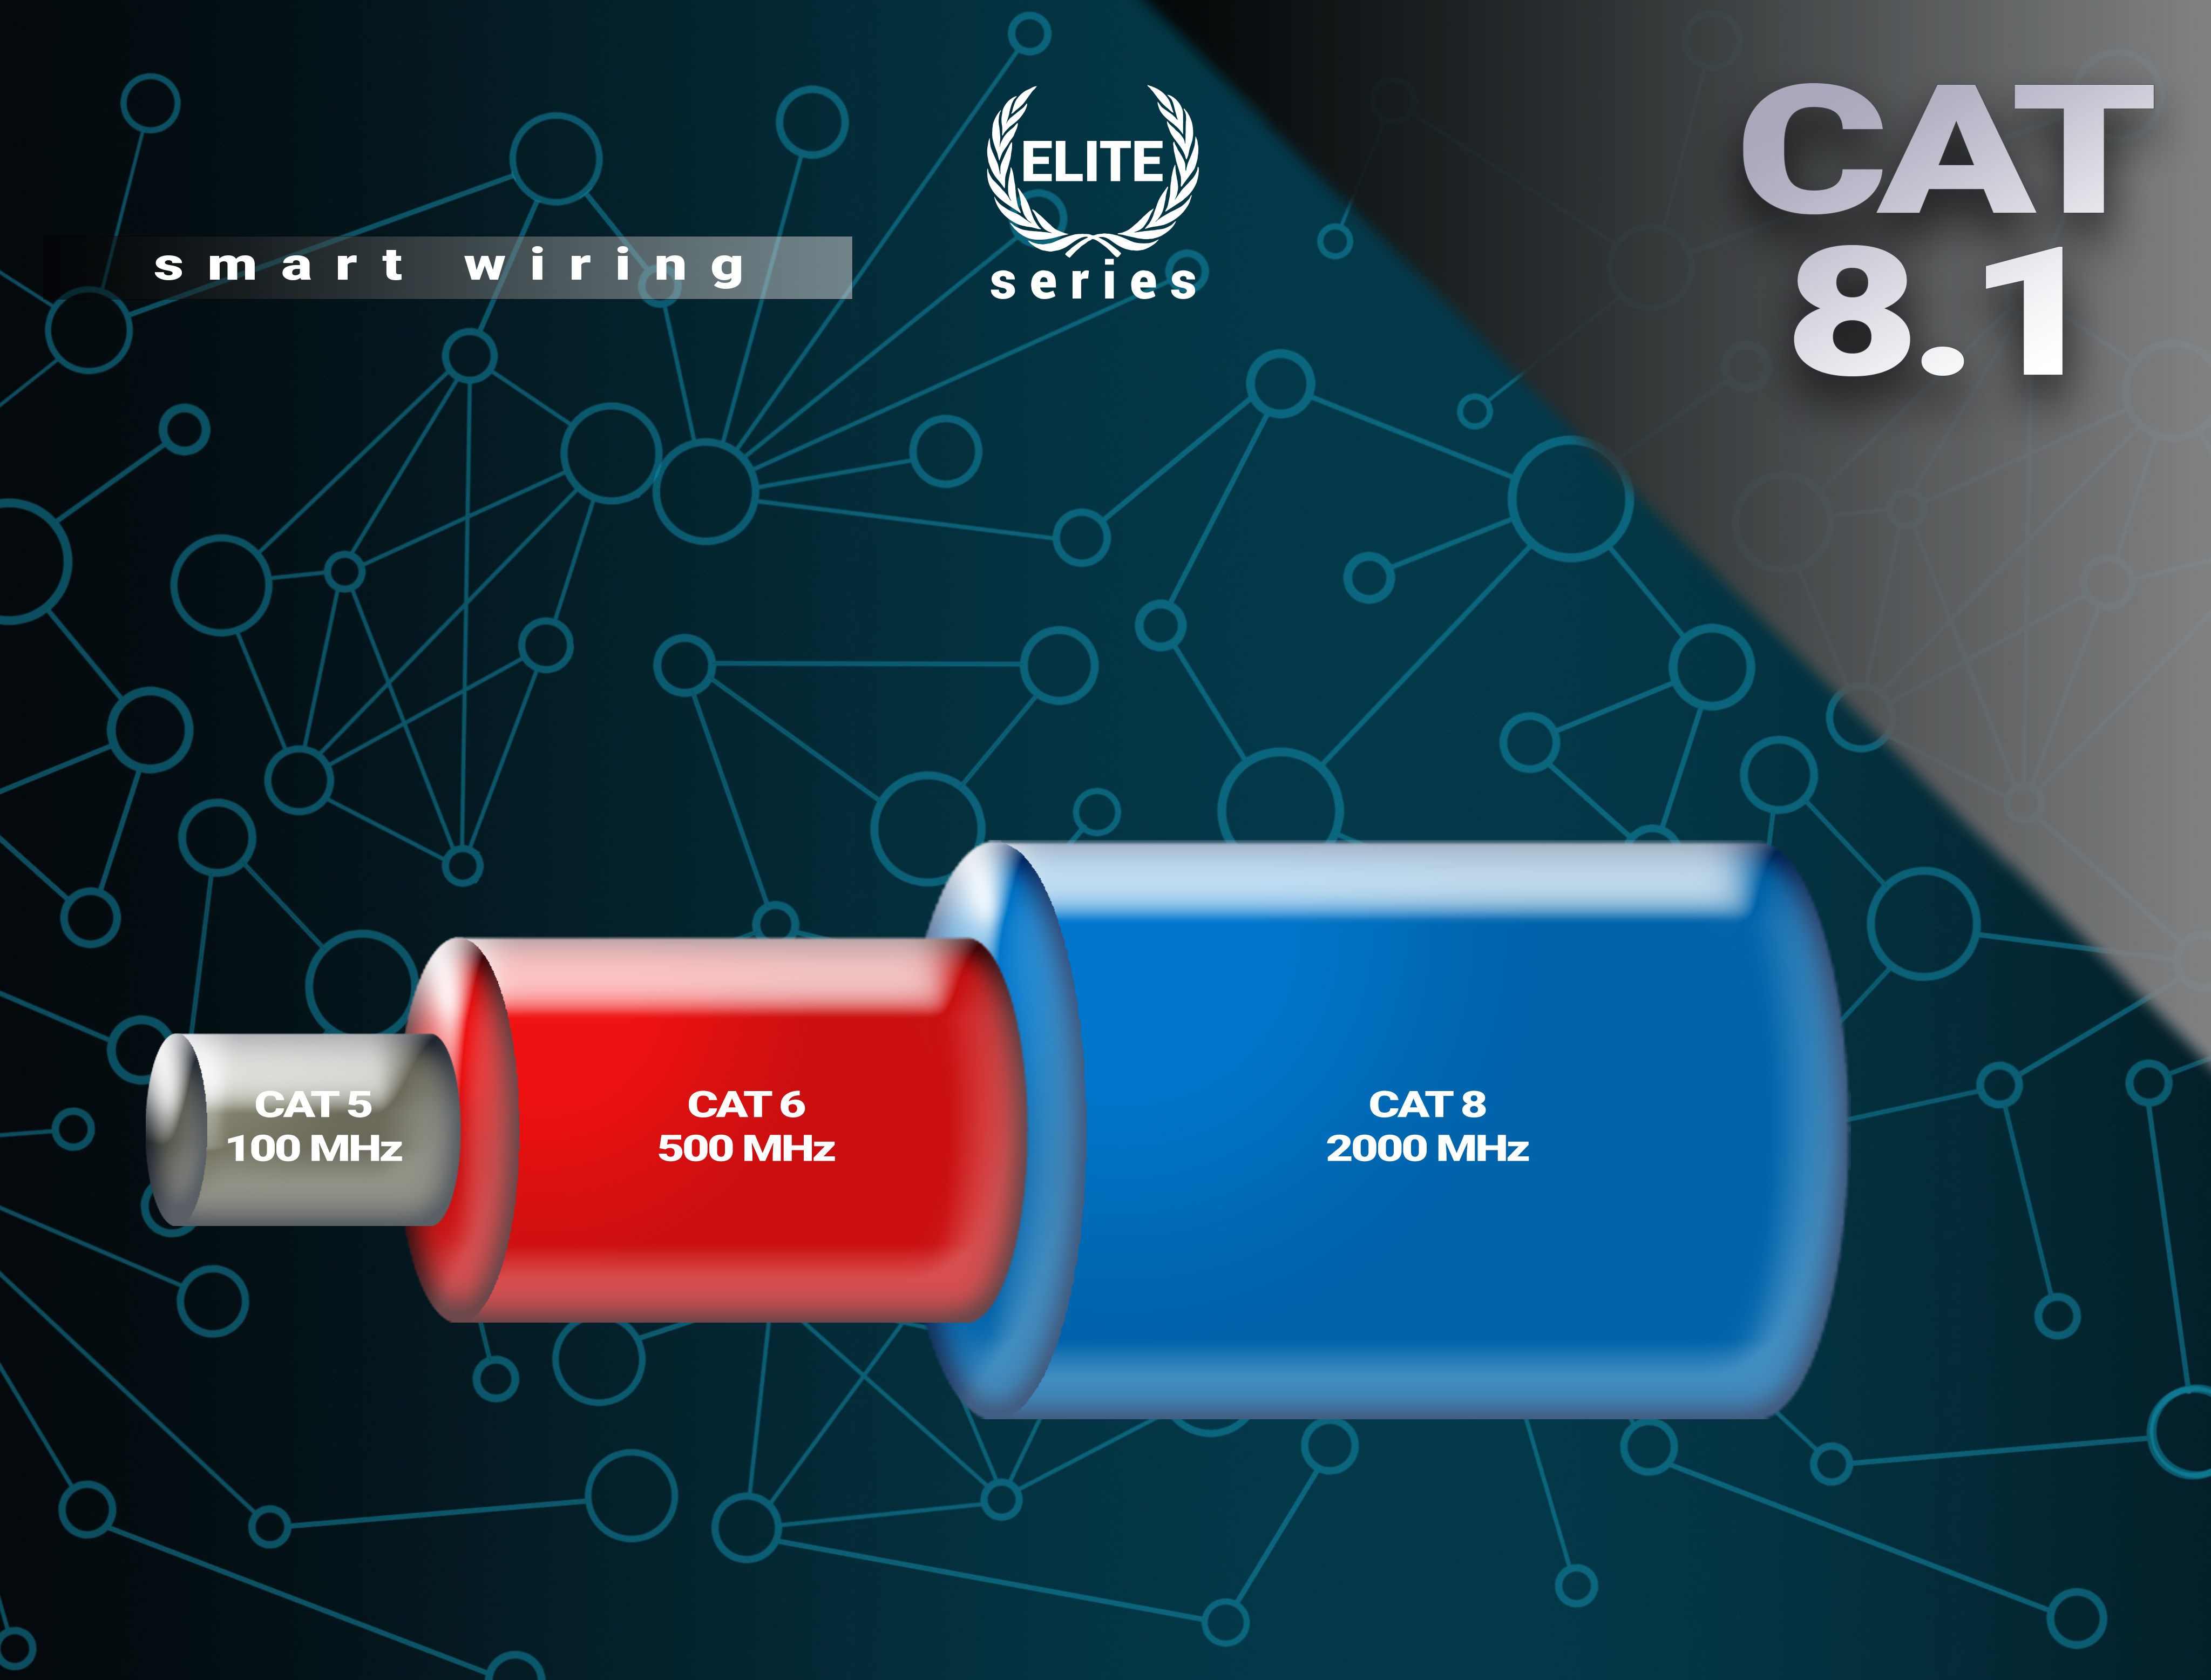 CAT Elite-Series, 2 Premium m - BIVANI Kabel 40 8.1 Netzwerkkabel, LAN Gbps